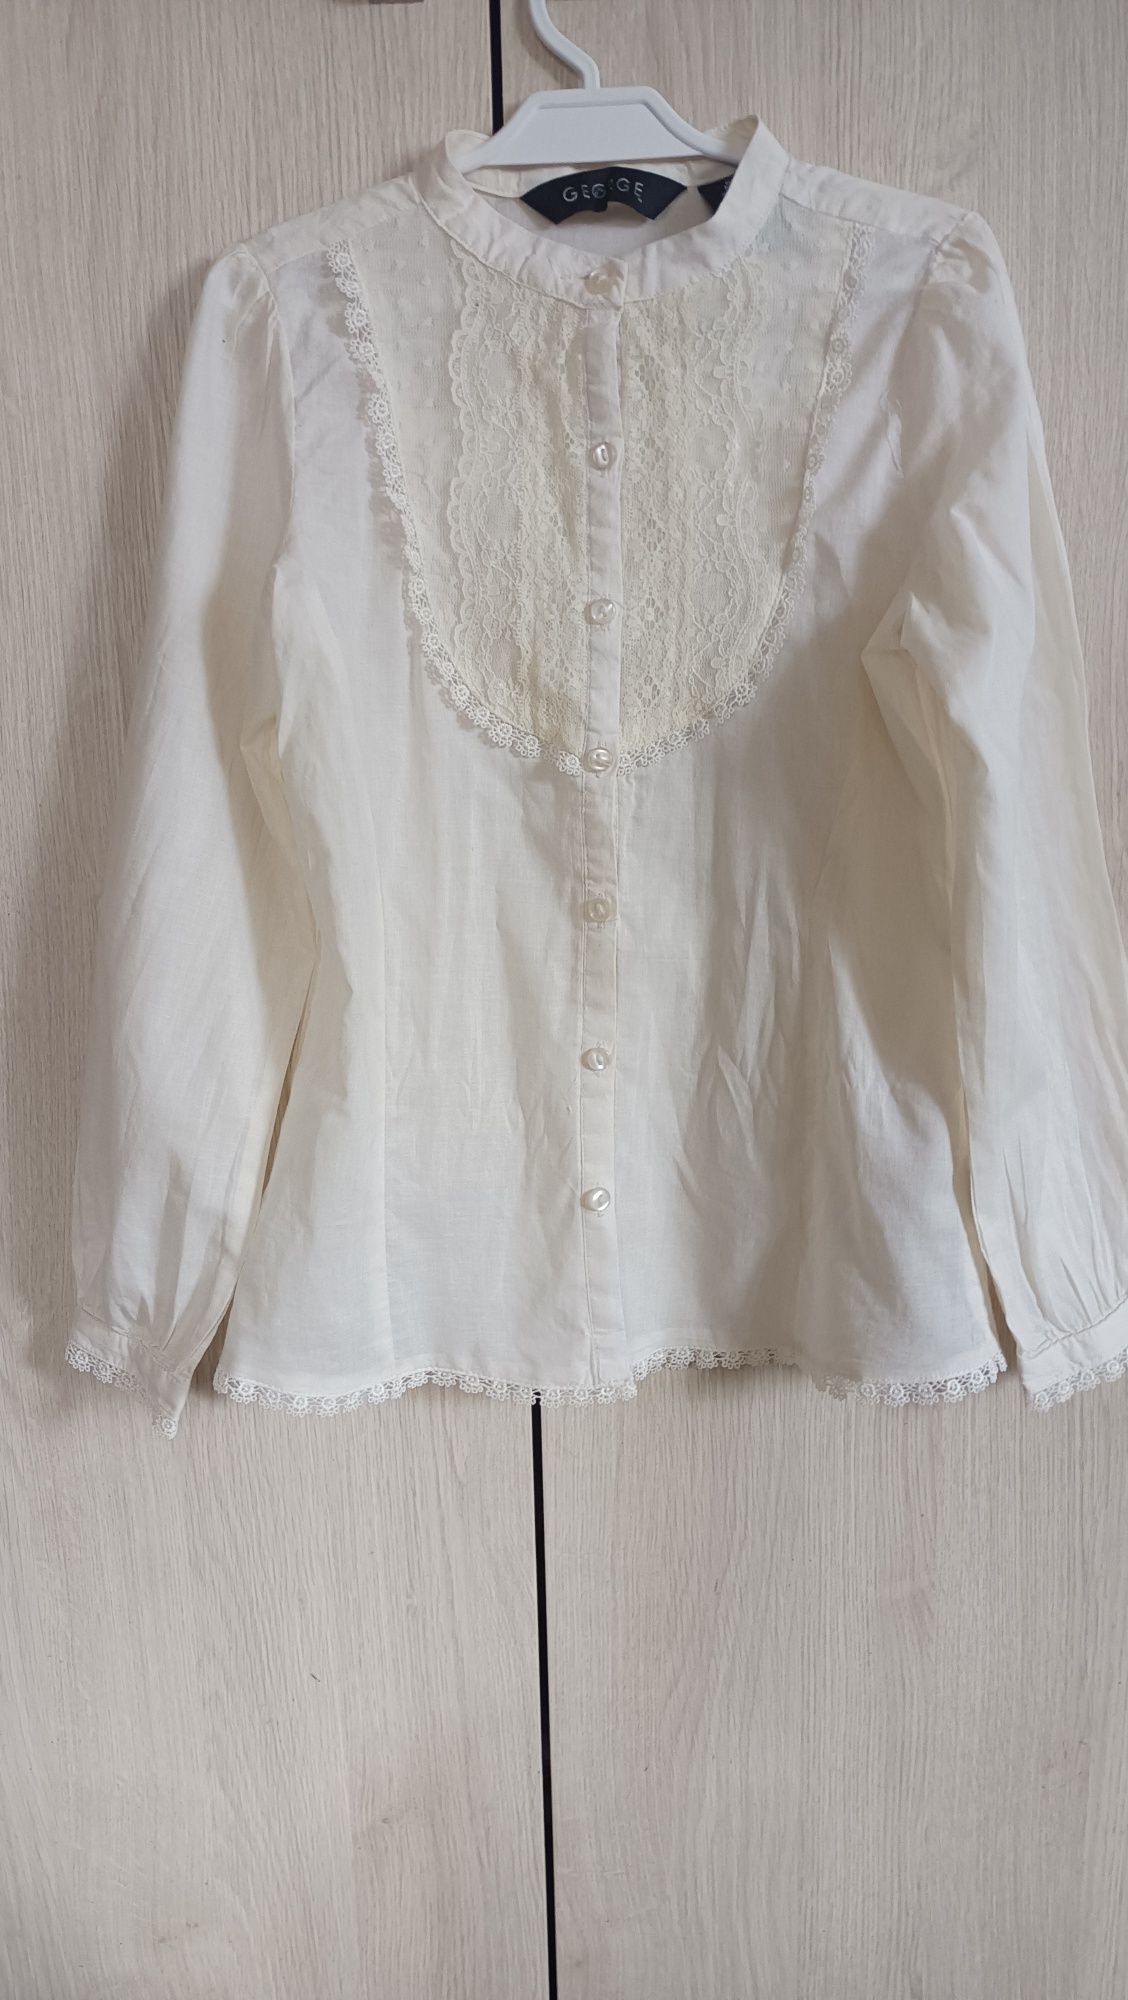 Kremowa bluzka galowa dziewczęca długi rękaw 100%bawełna r.134/140 Now